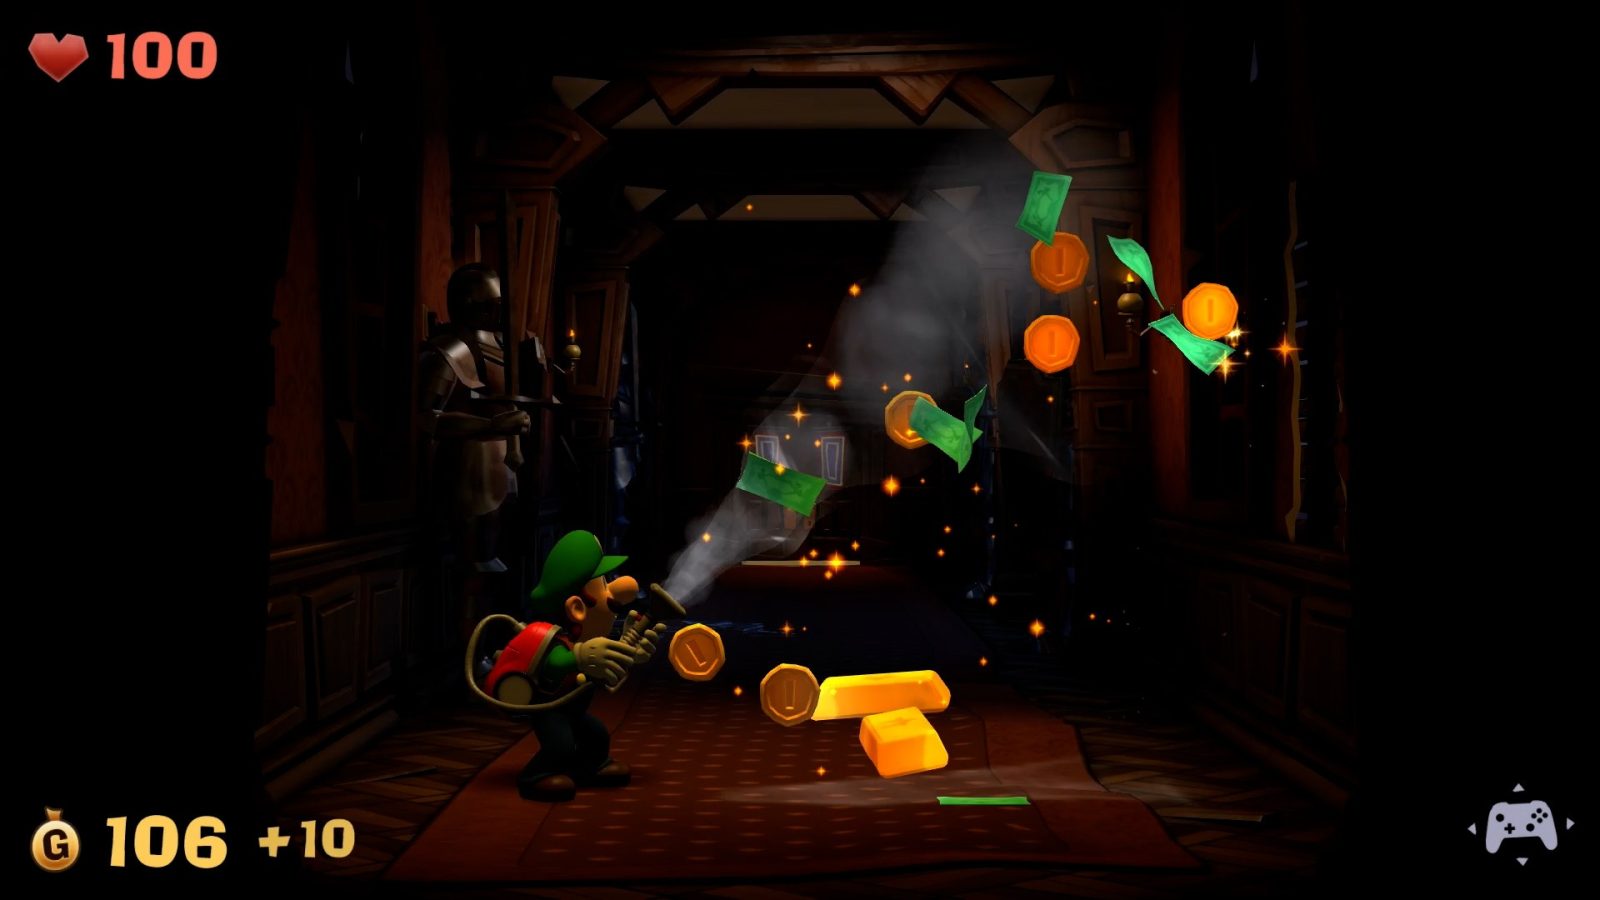 Anteprima Luigi’s Mansion 2 HD: le nostre spettrali prime impressioni!